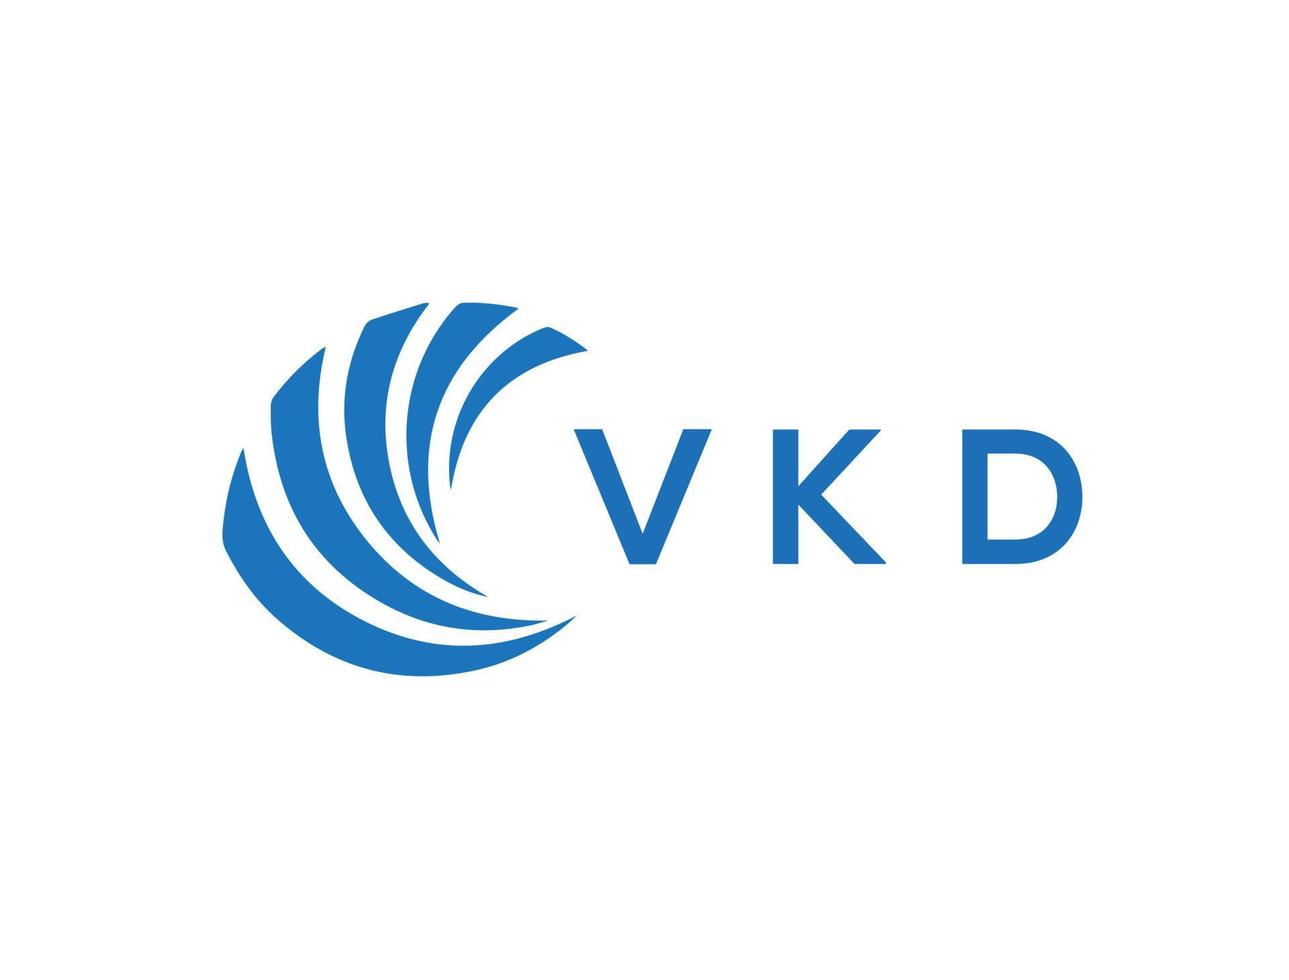 VKD letter logo design on white background. VKD creative circle letter logo concept. VKD letter design. vector